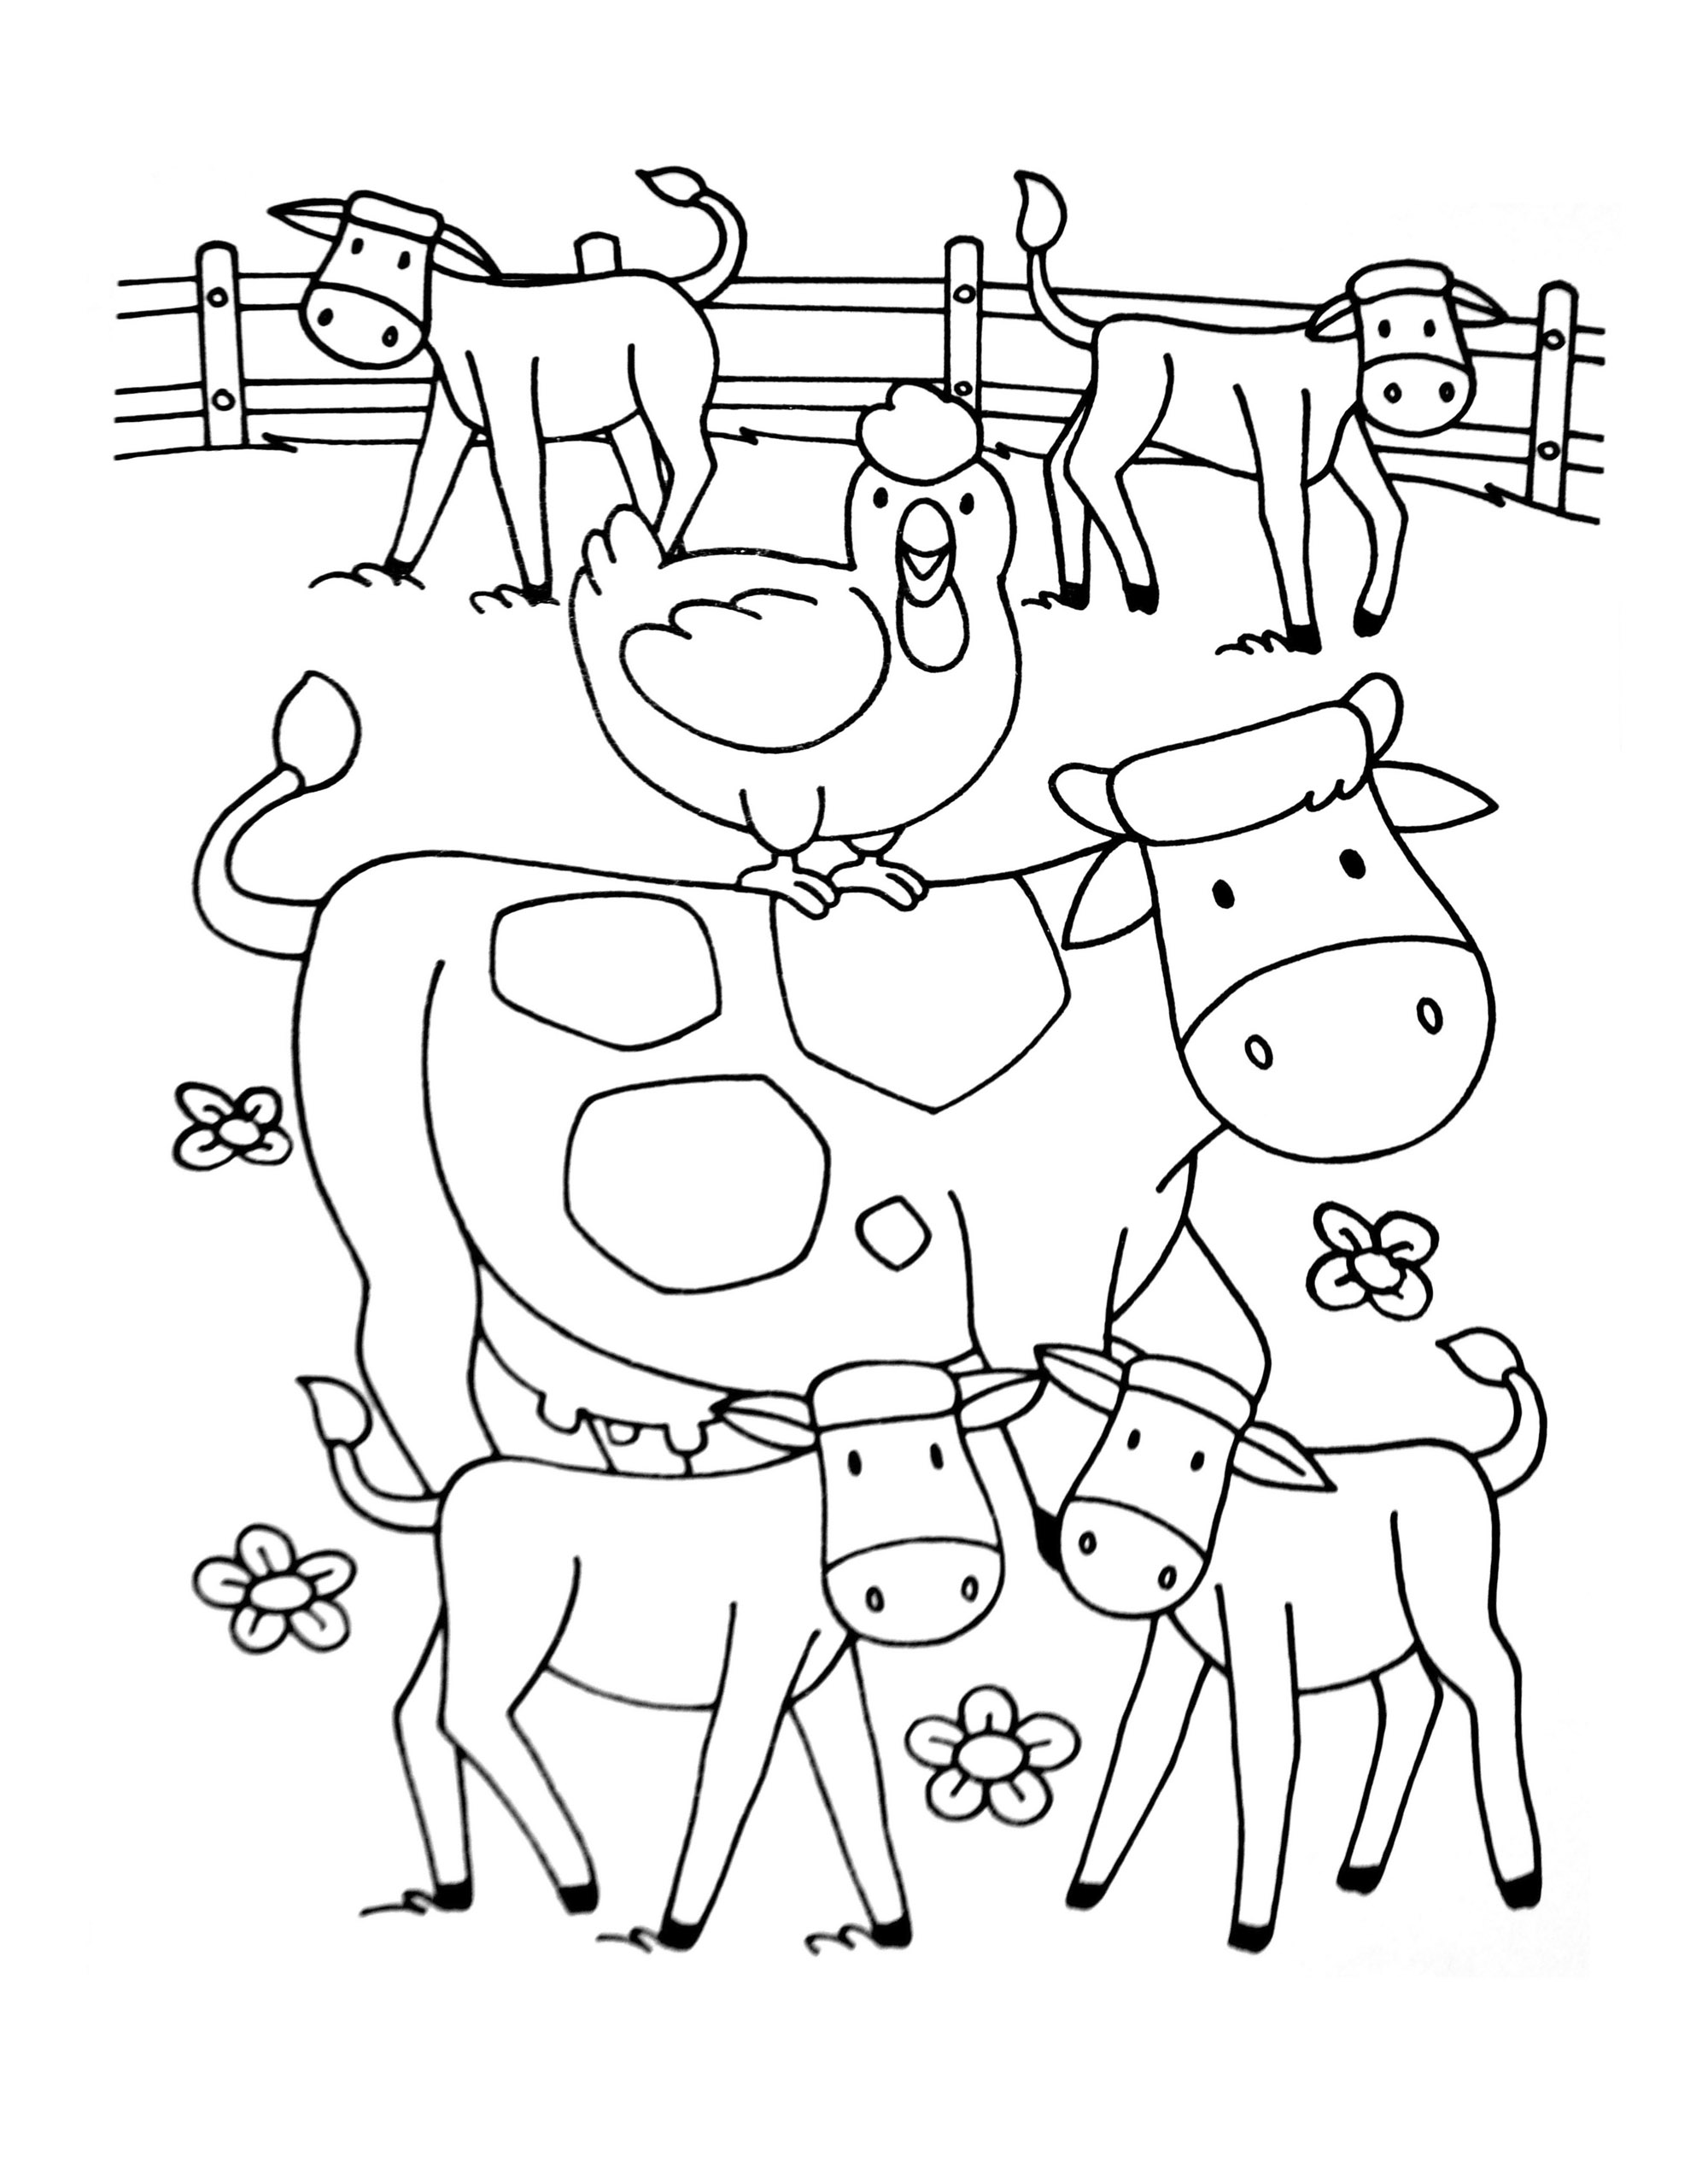 Galinhas e pintos - Sur la Ferme (tracteurs, fermier, animaux) - Just  Color Crianças : Páginas para colorir para crianças